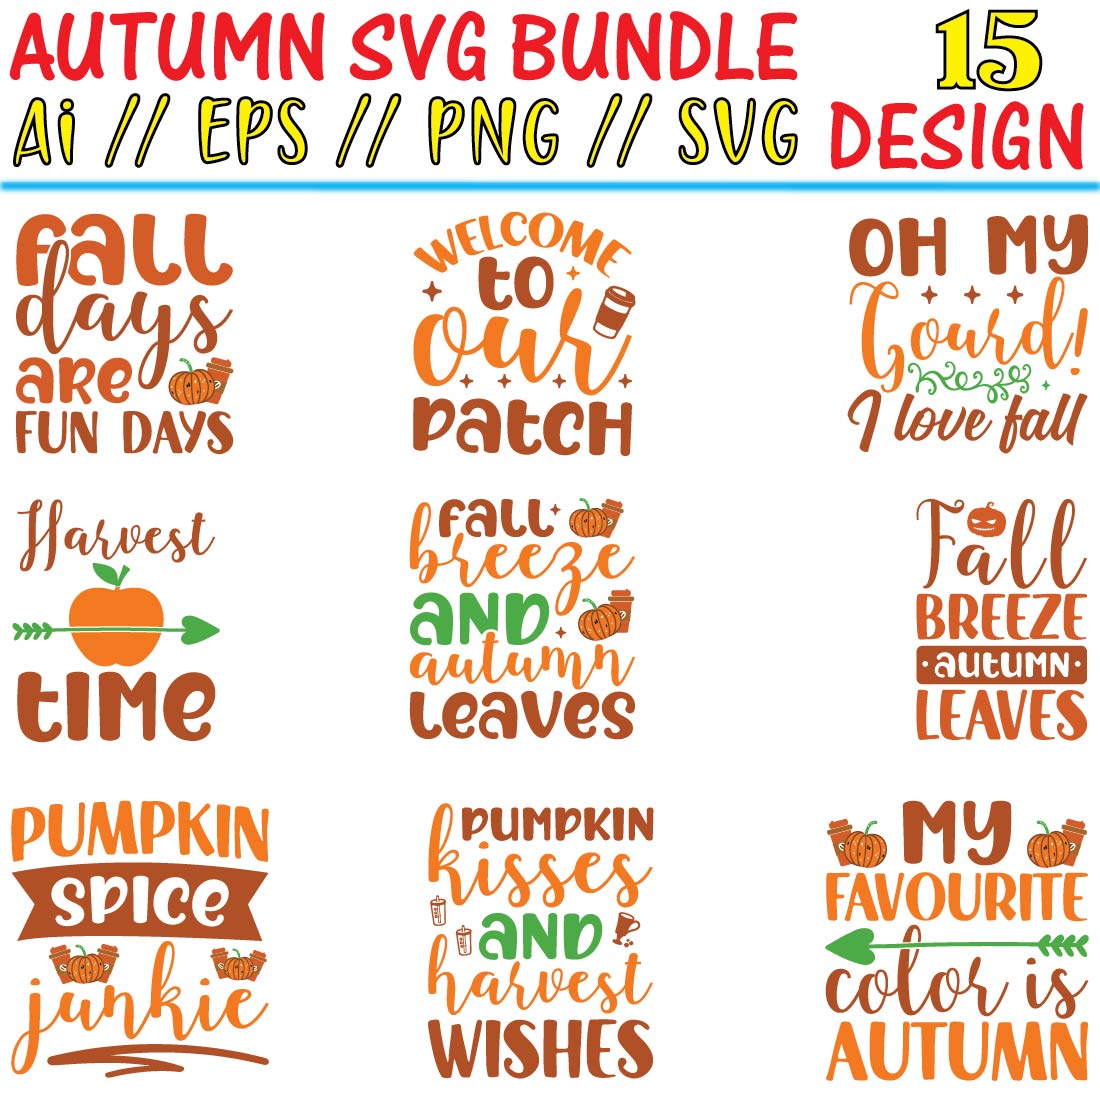 Autumn SVG Bundle cover image.